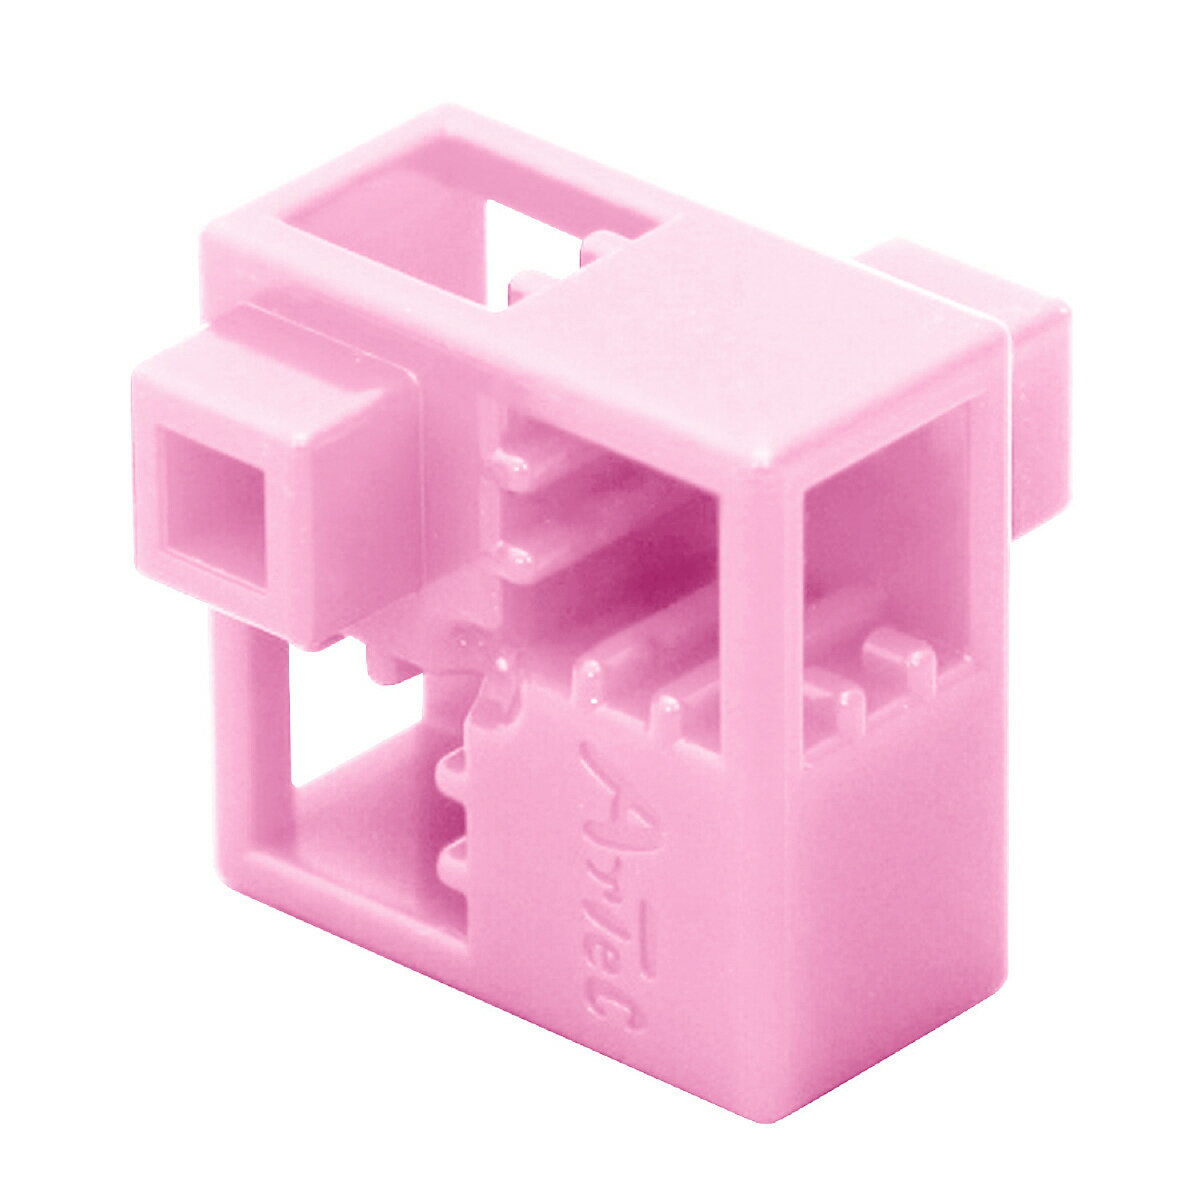 【ゆうパケット対応可】Artecブロック・知育玩具 ハーフA 8P 薄ピンク 3